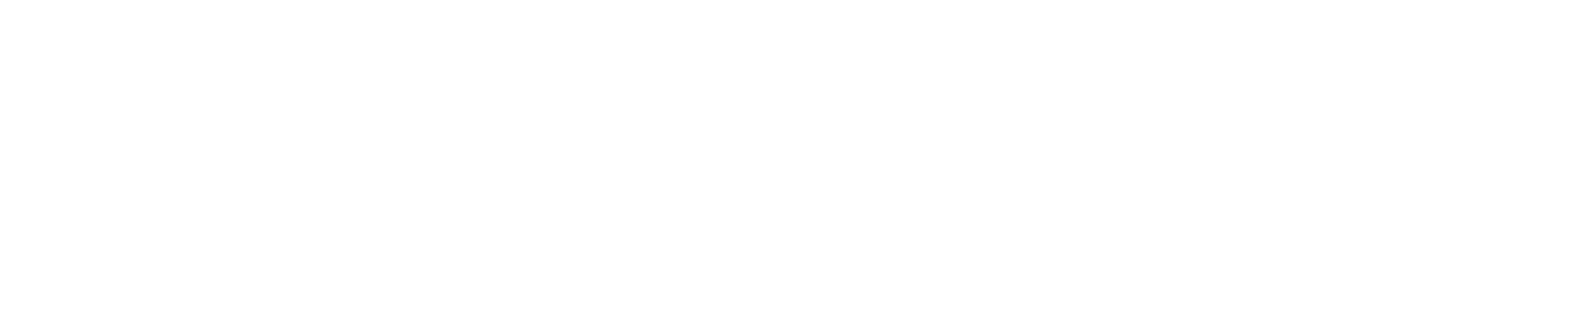 UniFirst logo grand pour les fonds sombres (PNG transparent)